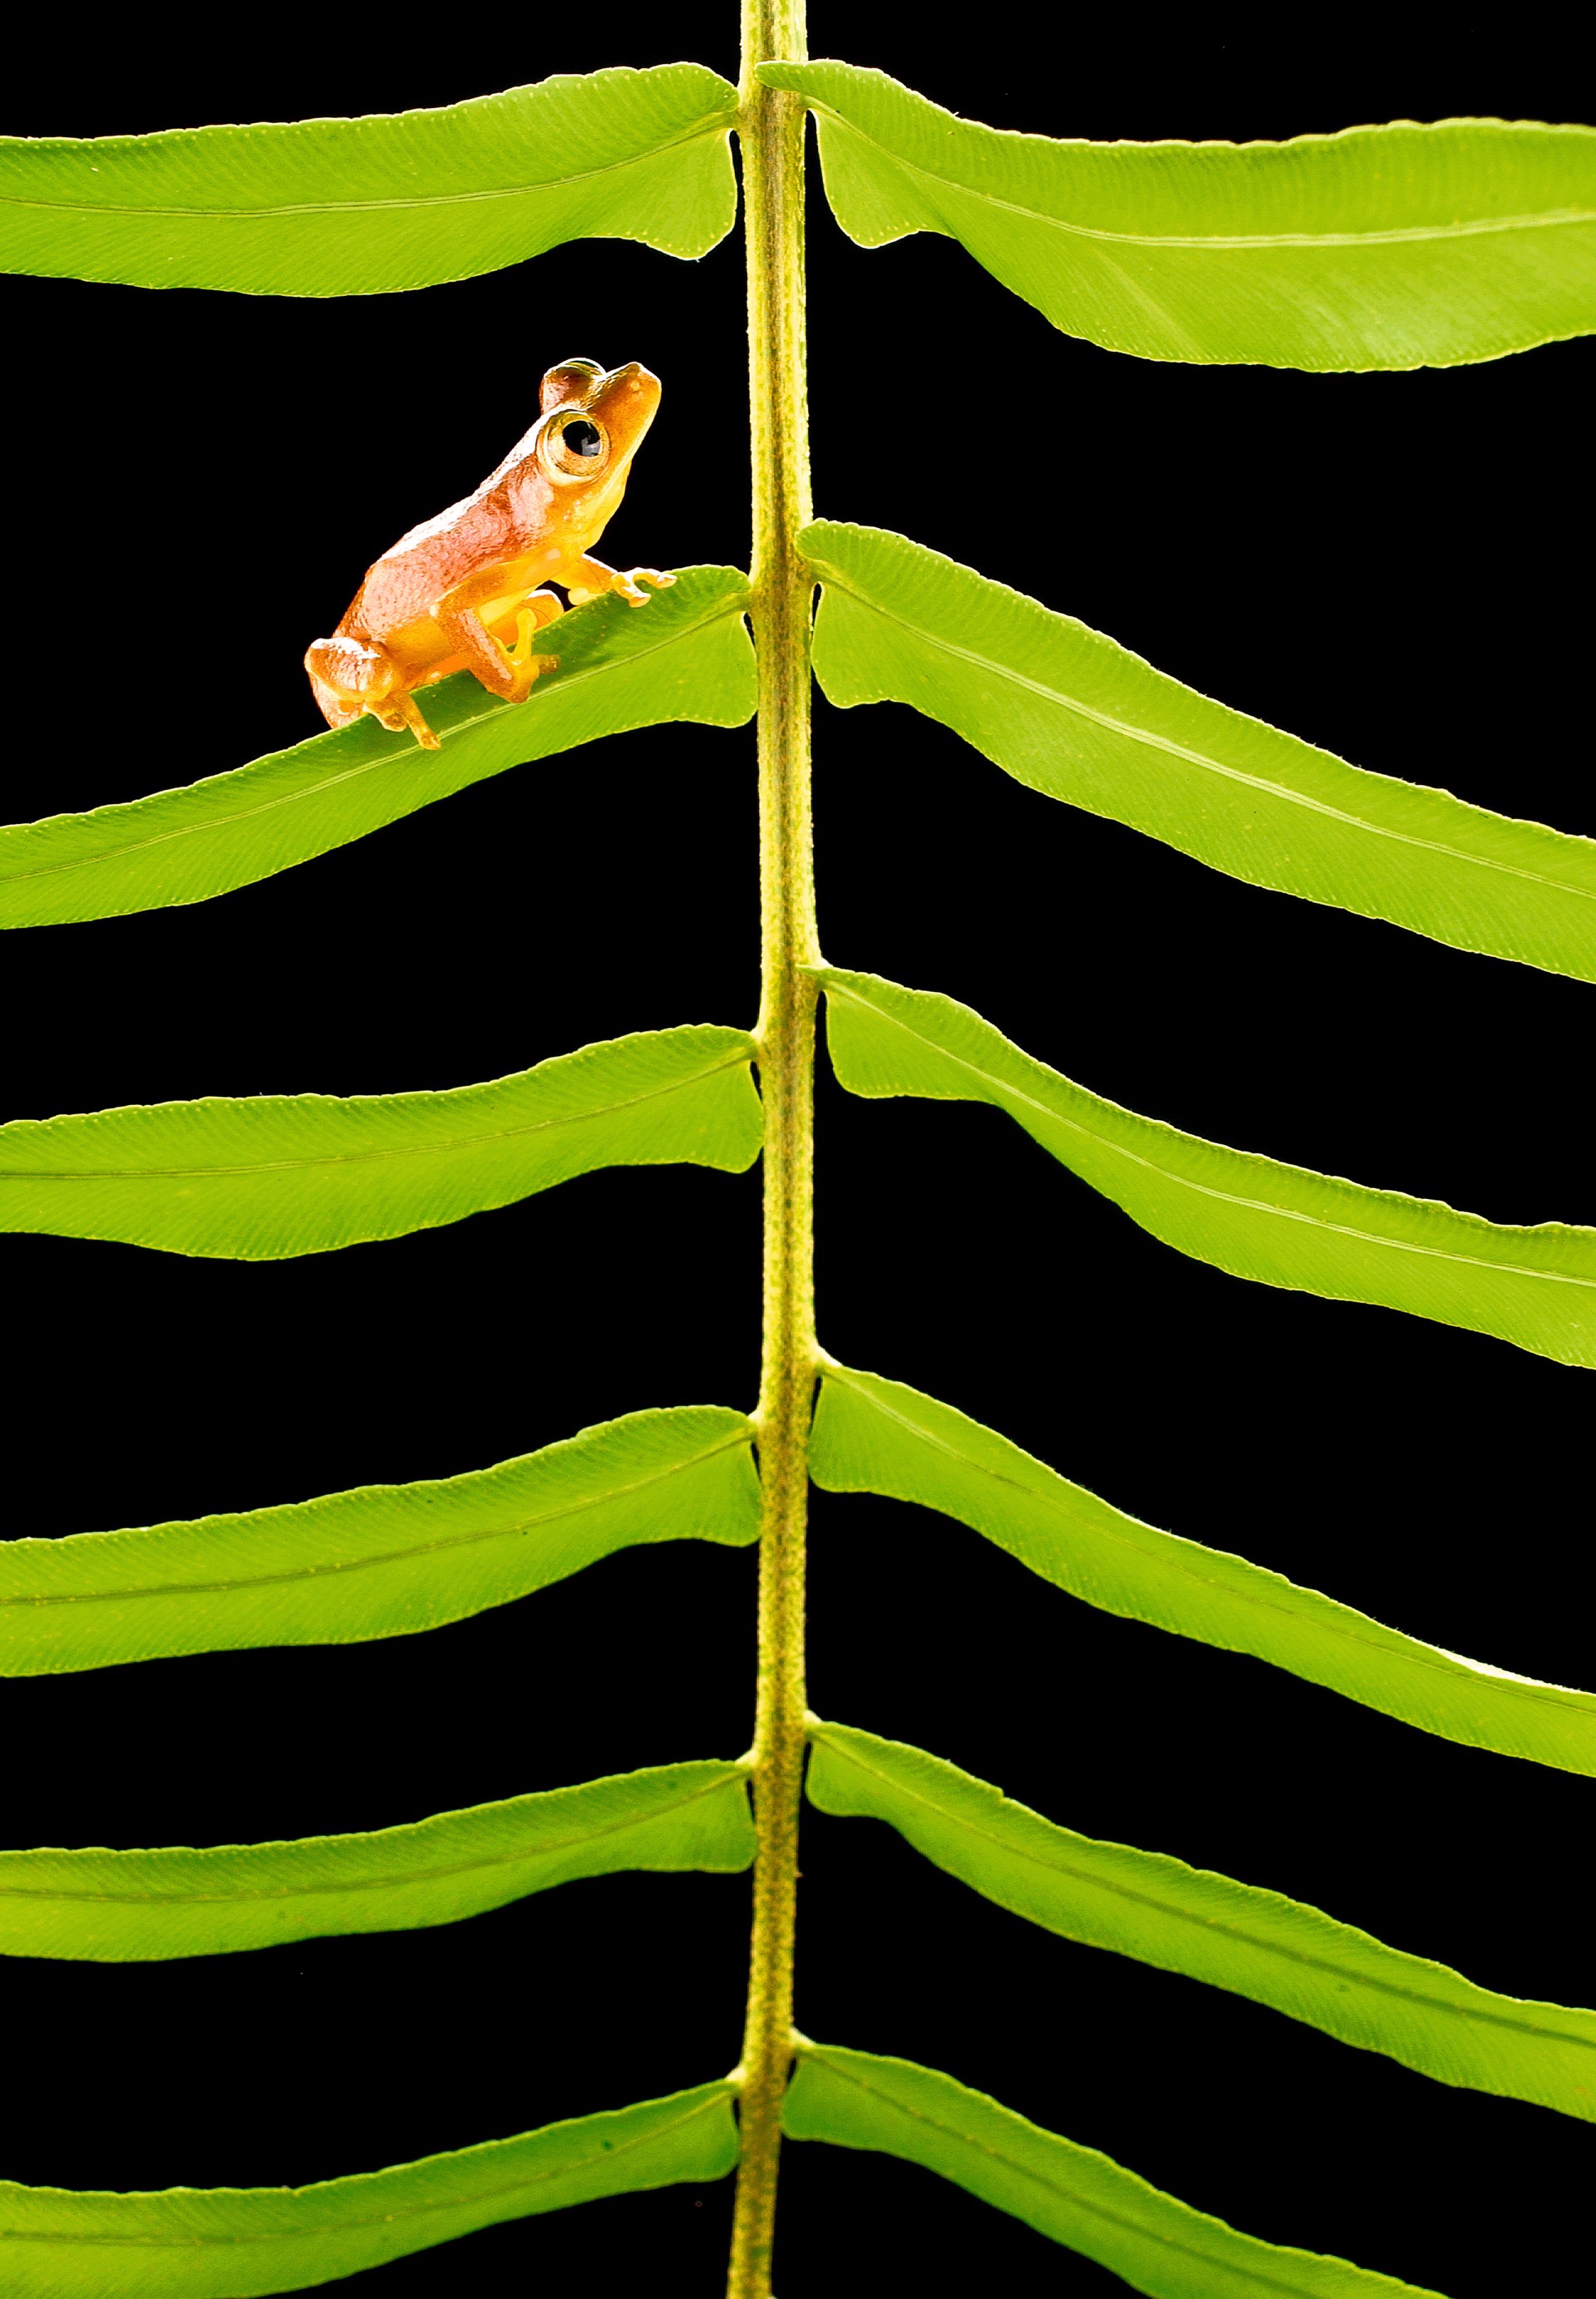 Frog on Fern by Carlton Ward Jr